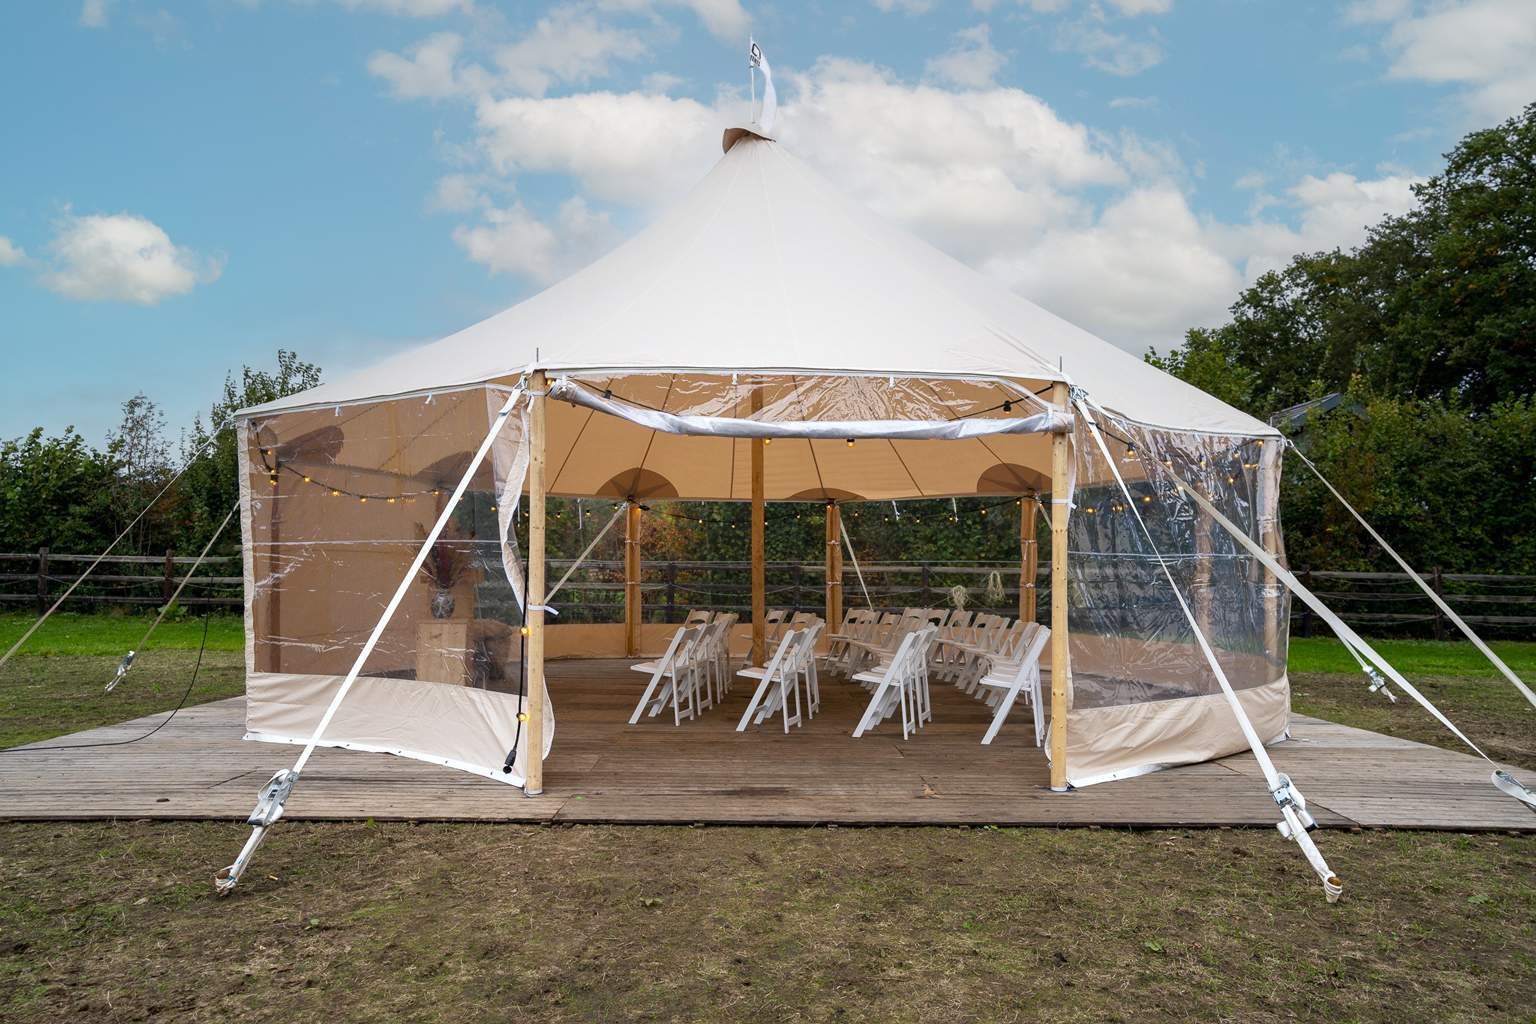 Sailcloth Tent 10 x 10 Meter | VDO Events: Ervaar ruimte met stijl in onze Sailcloth tent van 10 bij 10 meter. Perfecte voor kleinschalige evenementen.